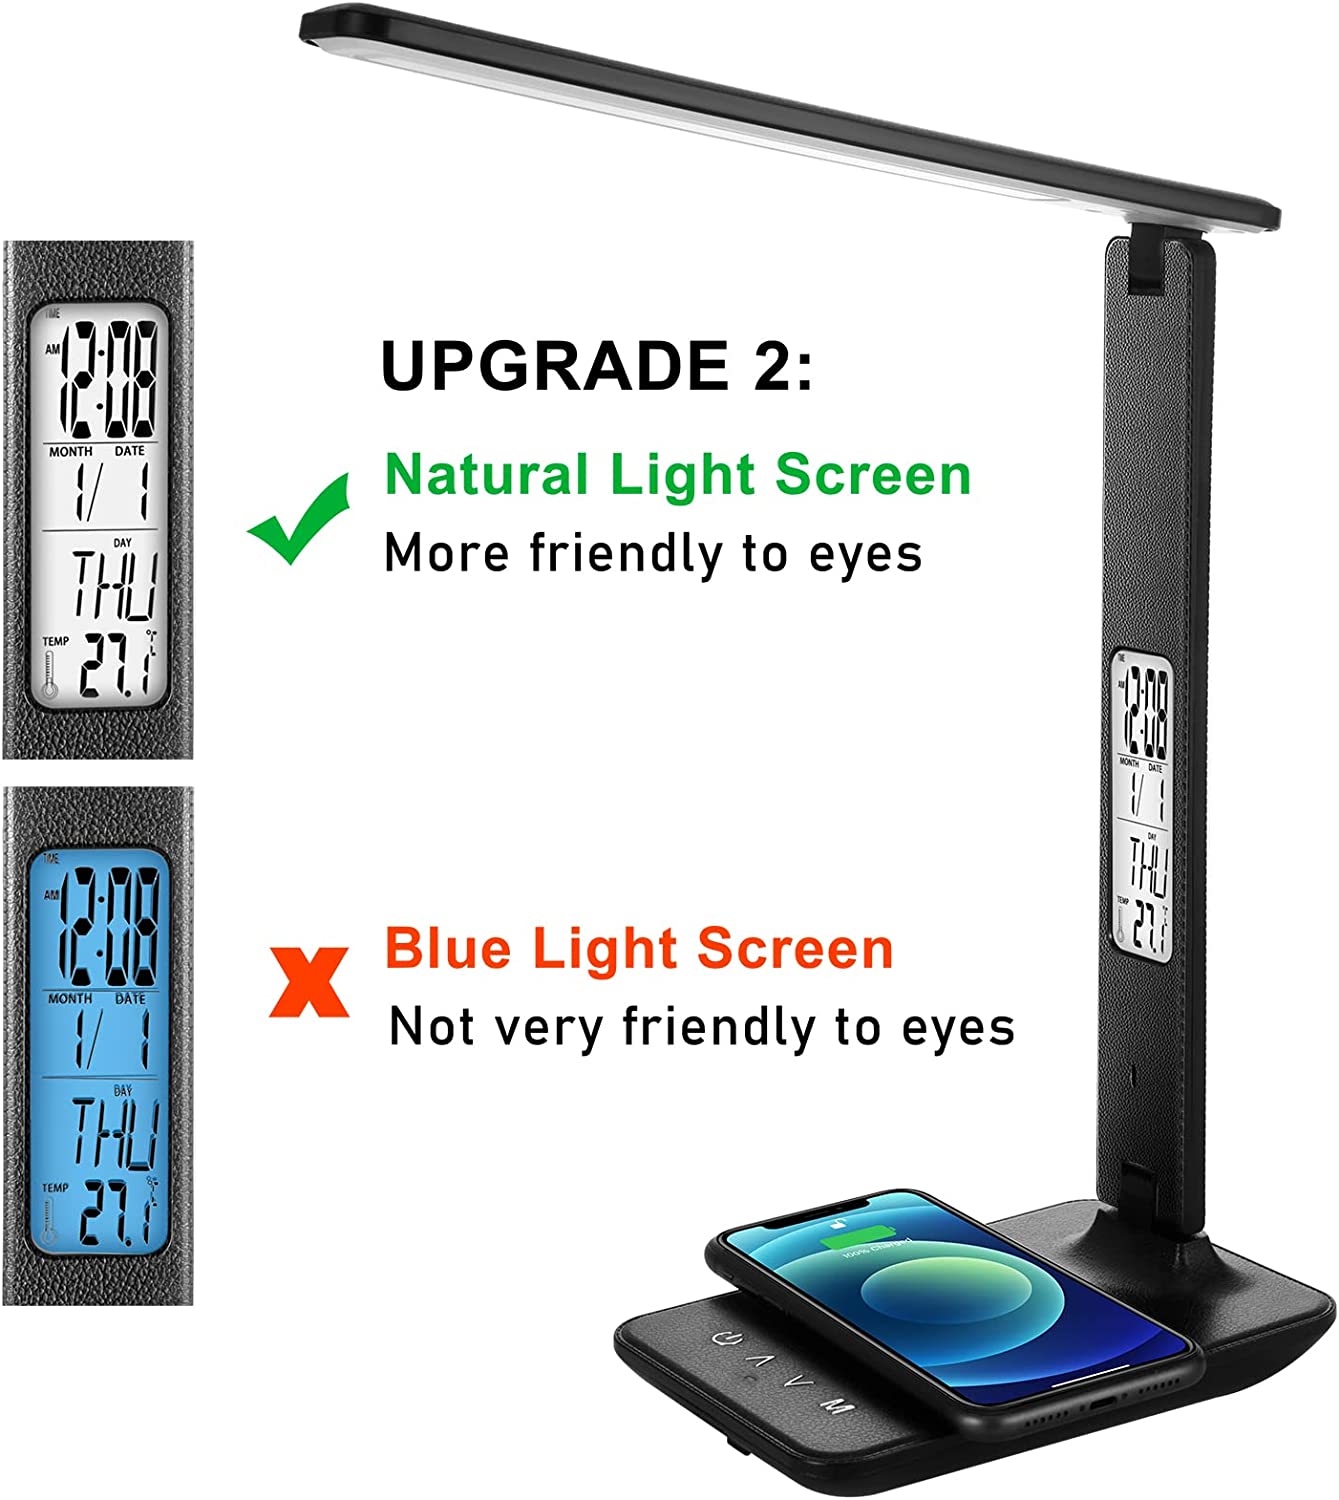 LED 데스크 램프 무선 충전기 USB 충전 포트 어두운 안구 카링 데스크 라이트 5 밝기 레벨 5 조명 모드 터치 제어 자동 타이머